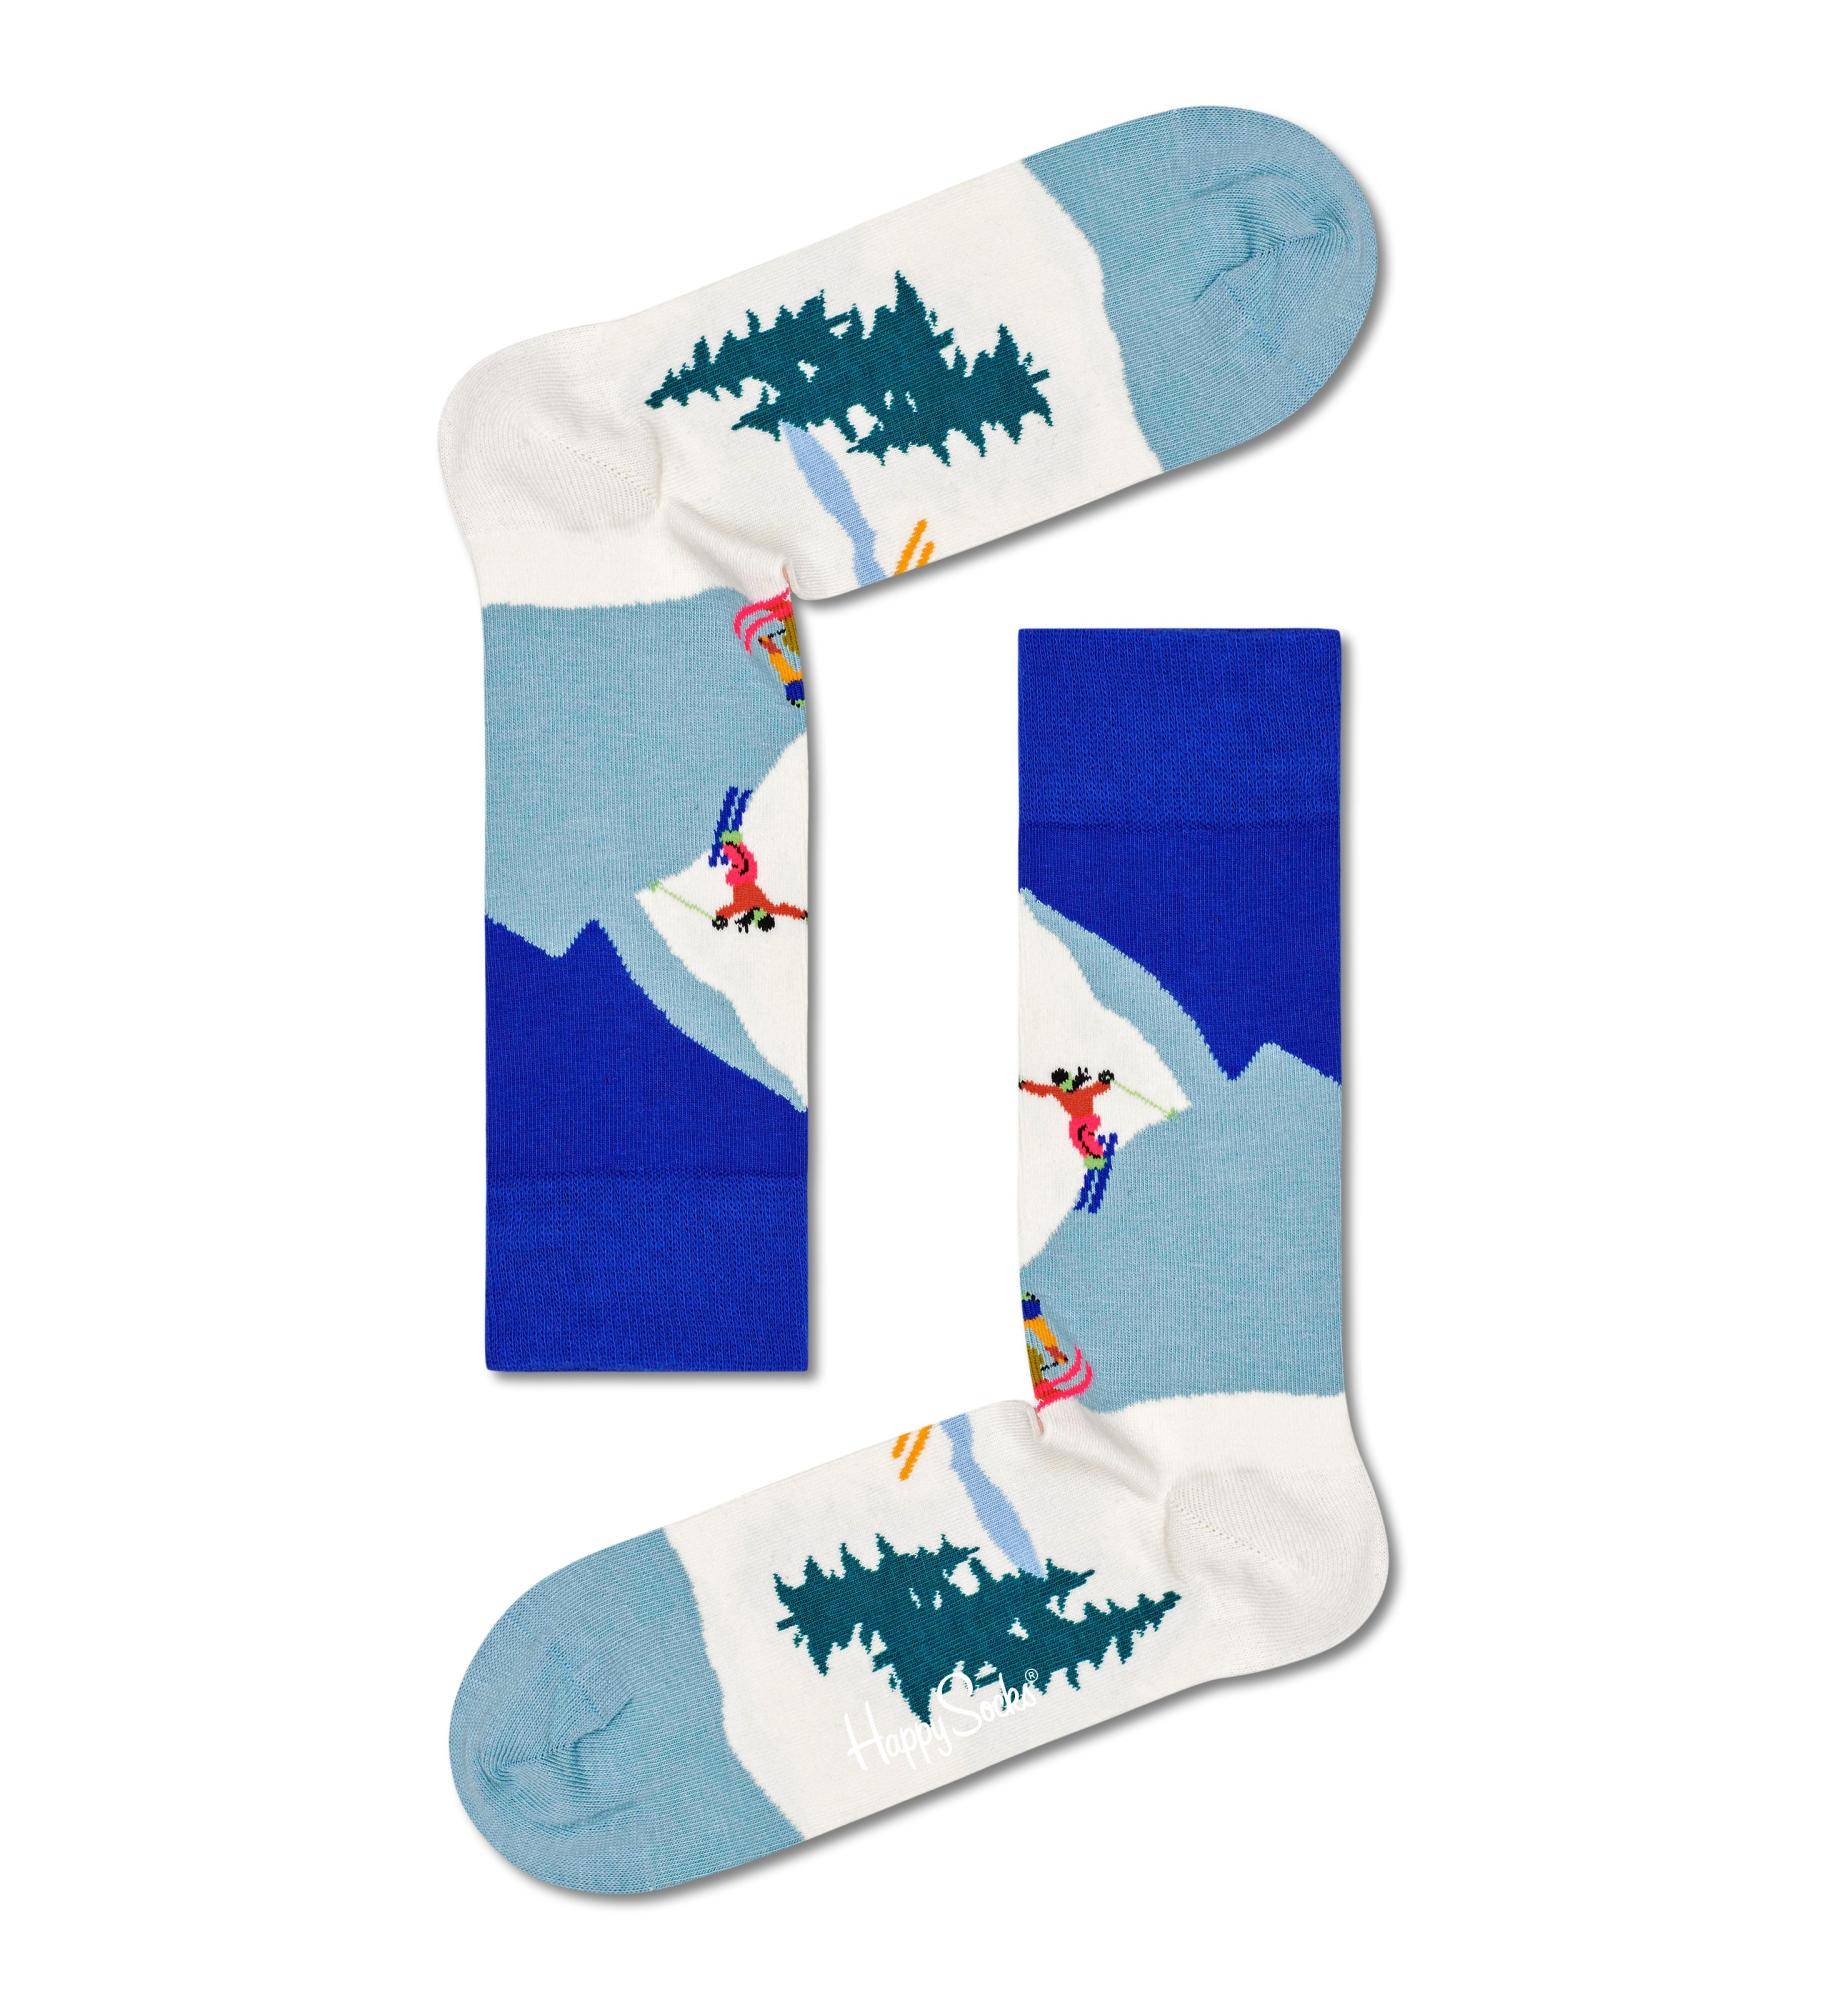 Носки Happy socks Downhill Skiing Sock DSS01  - купить